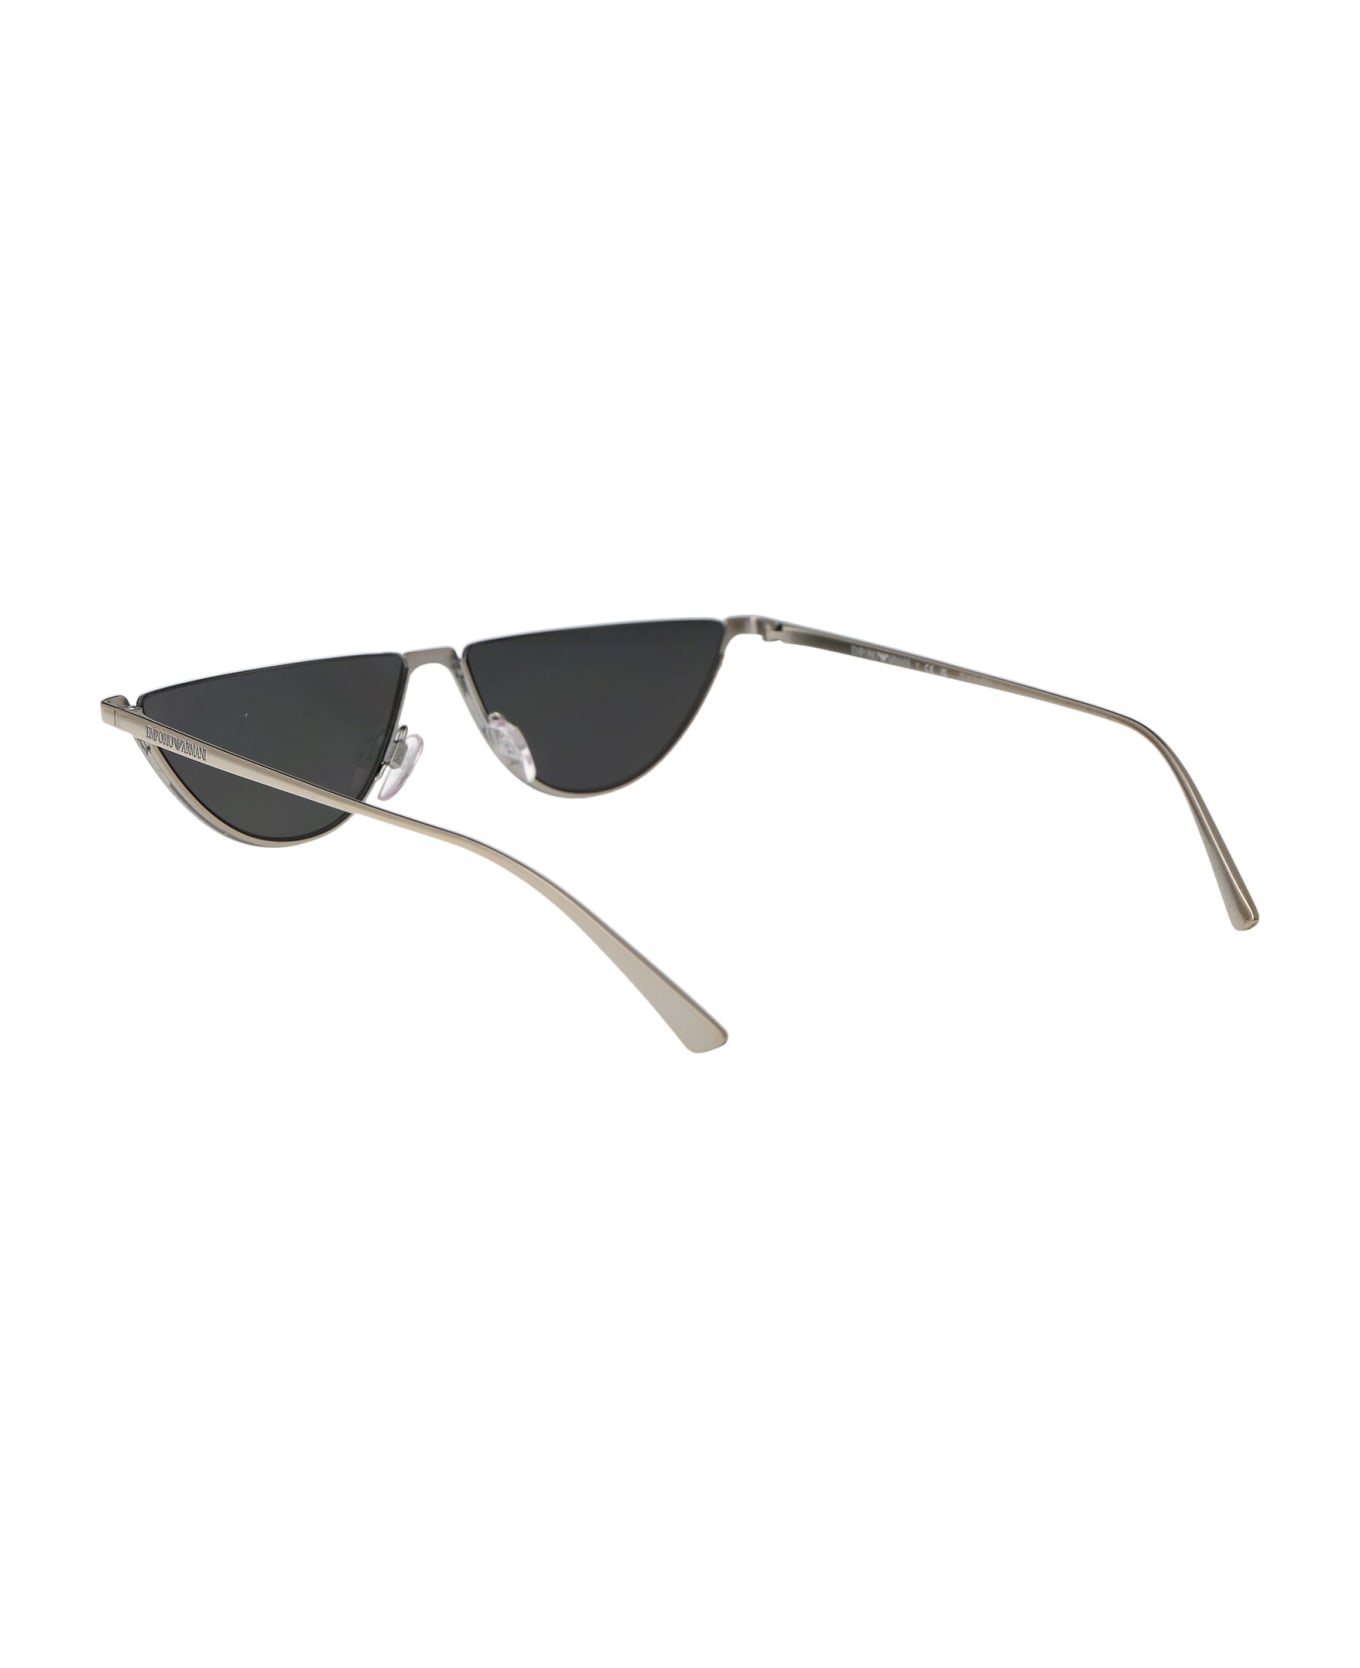 Emporio Armani 0ea2143 Sunglasses - 30156G SHINY SILVER